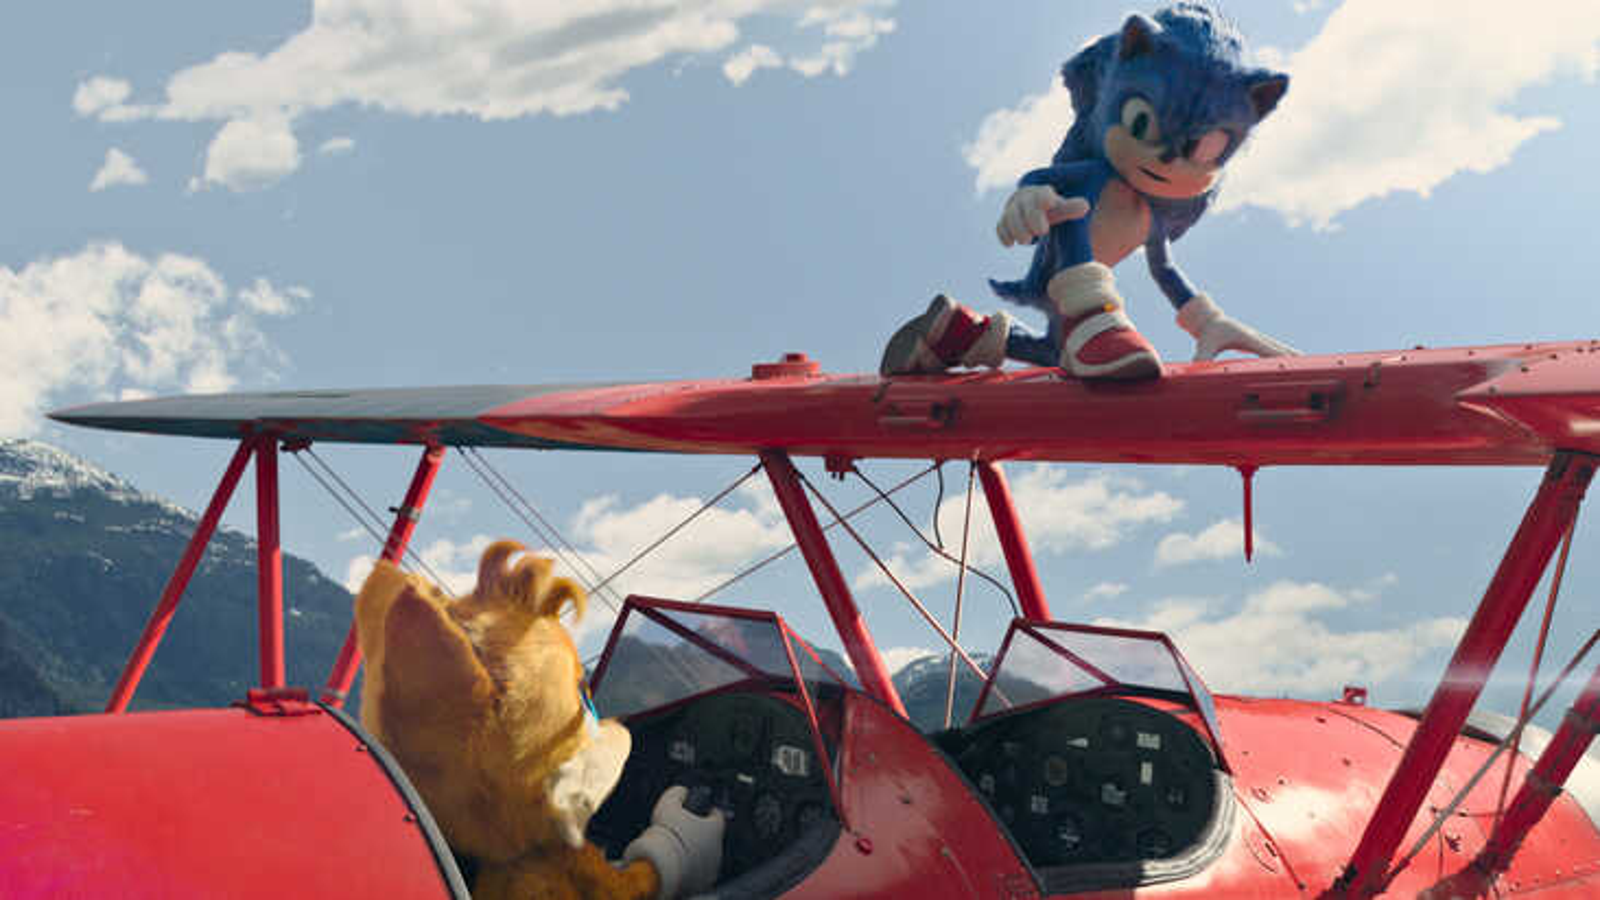 Sonic 2: O Filme, Estreia dia 31 de março (Trailer)